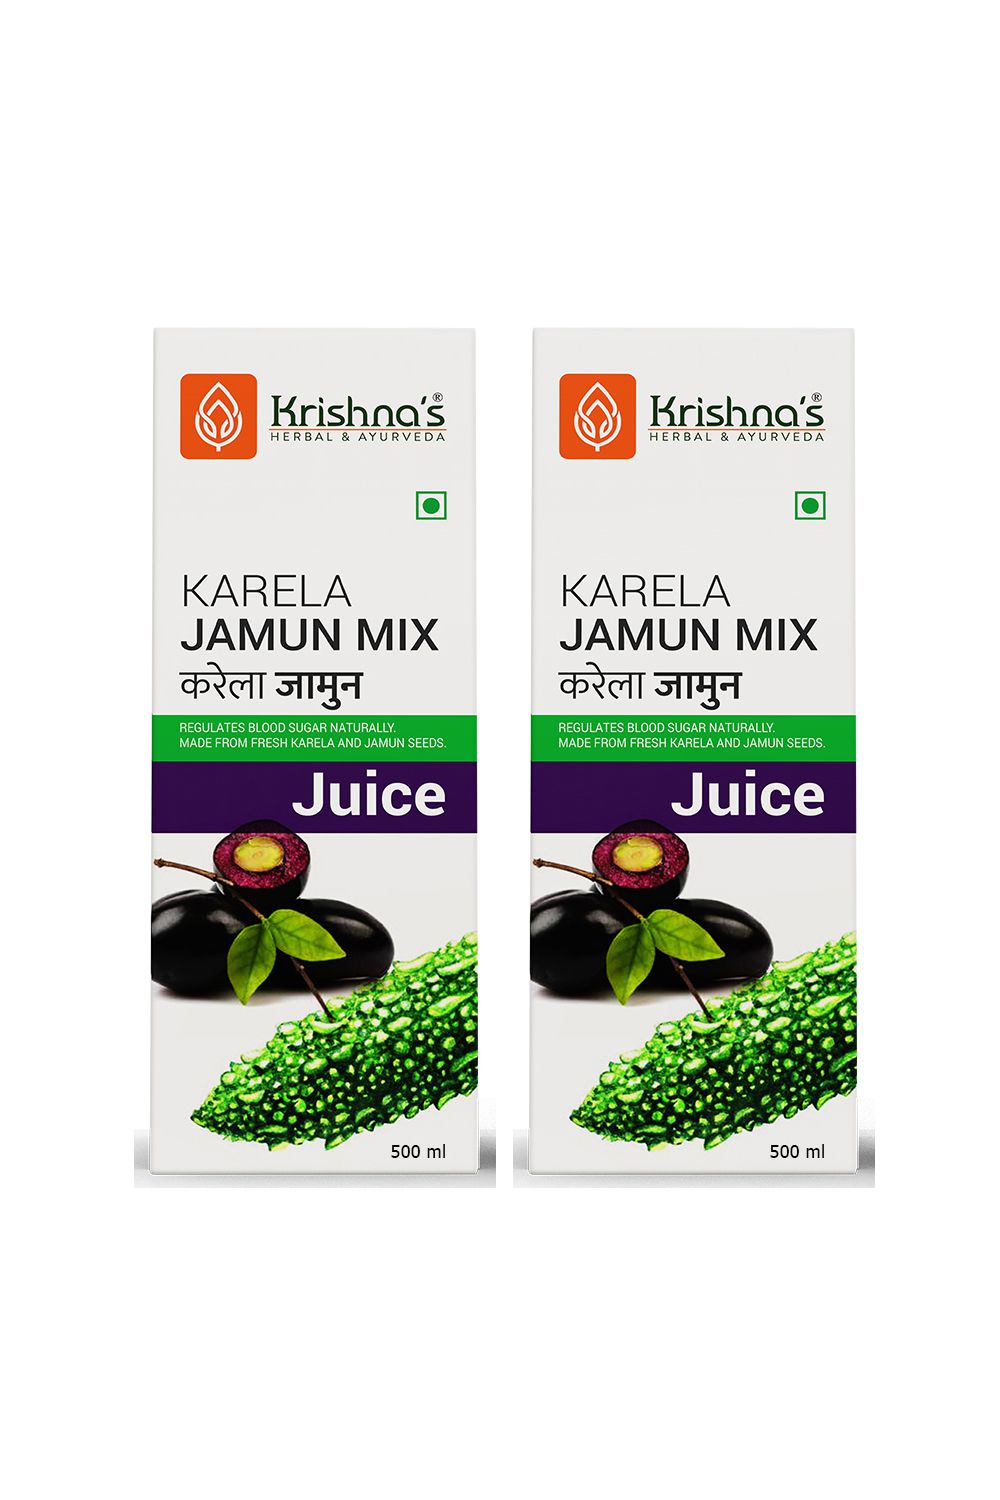     			Krishna's Herbal & Ayurveda Karela Jamun Mix Juice 500ml ( Pack of 2 )